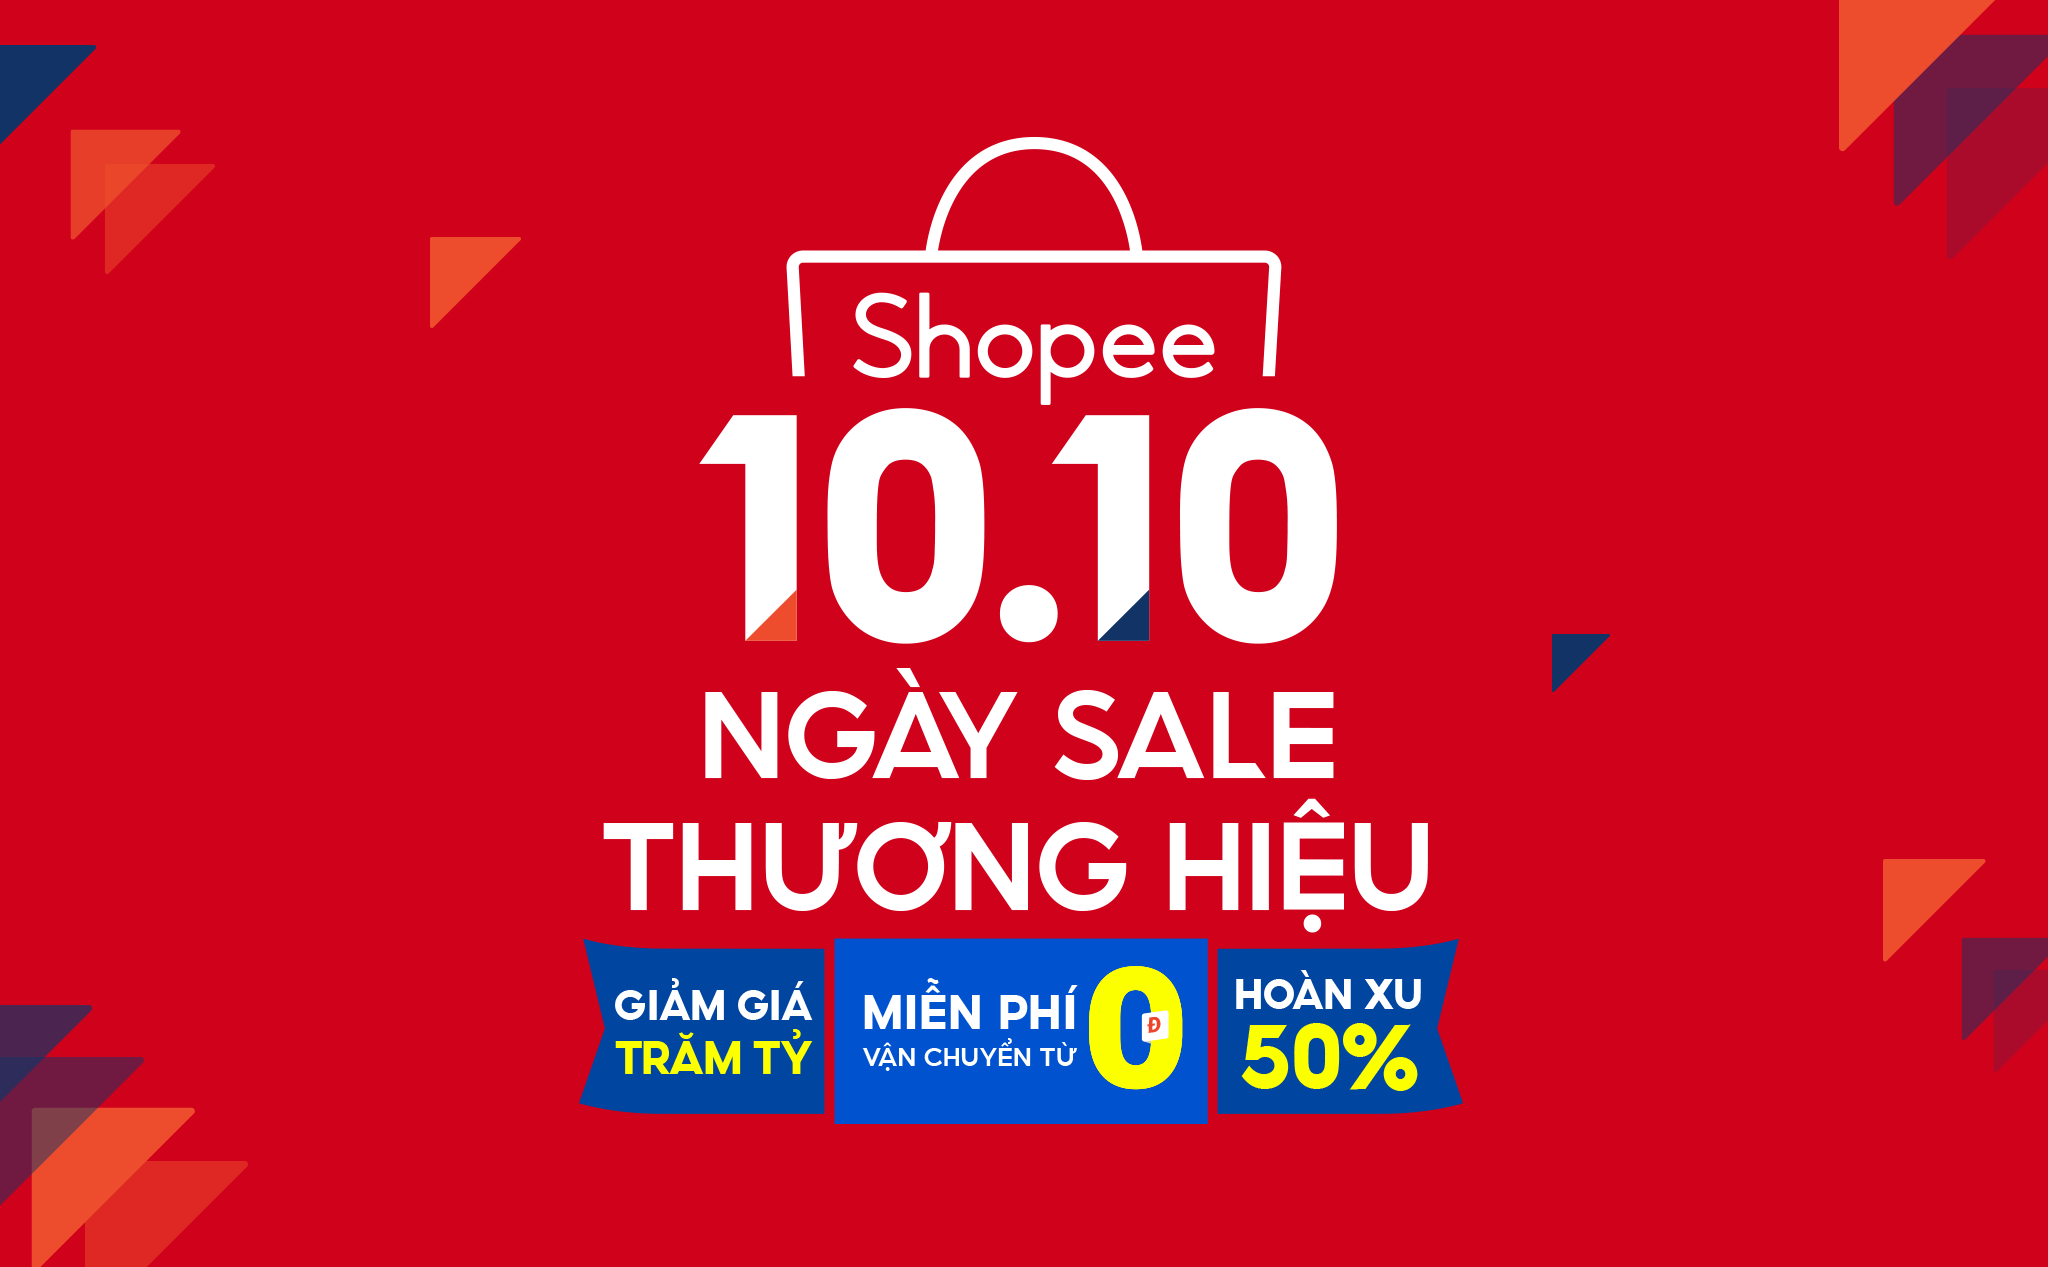 [QC] Khởi động 10.10 Ngày Sale Thương Hiệu cùng Shopee: Loạt siêu phẩm cùng cơ hội hoàn xu tới 50%